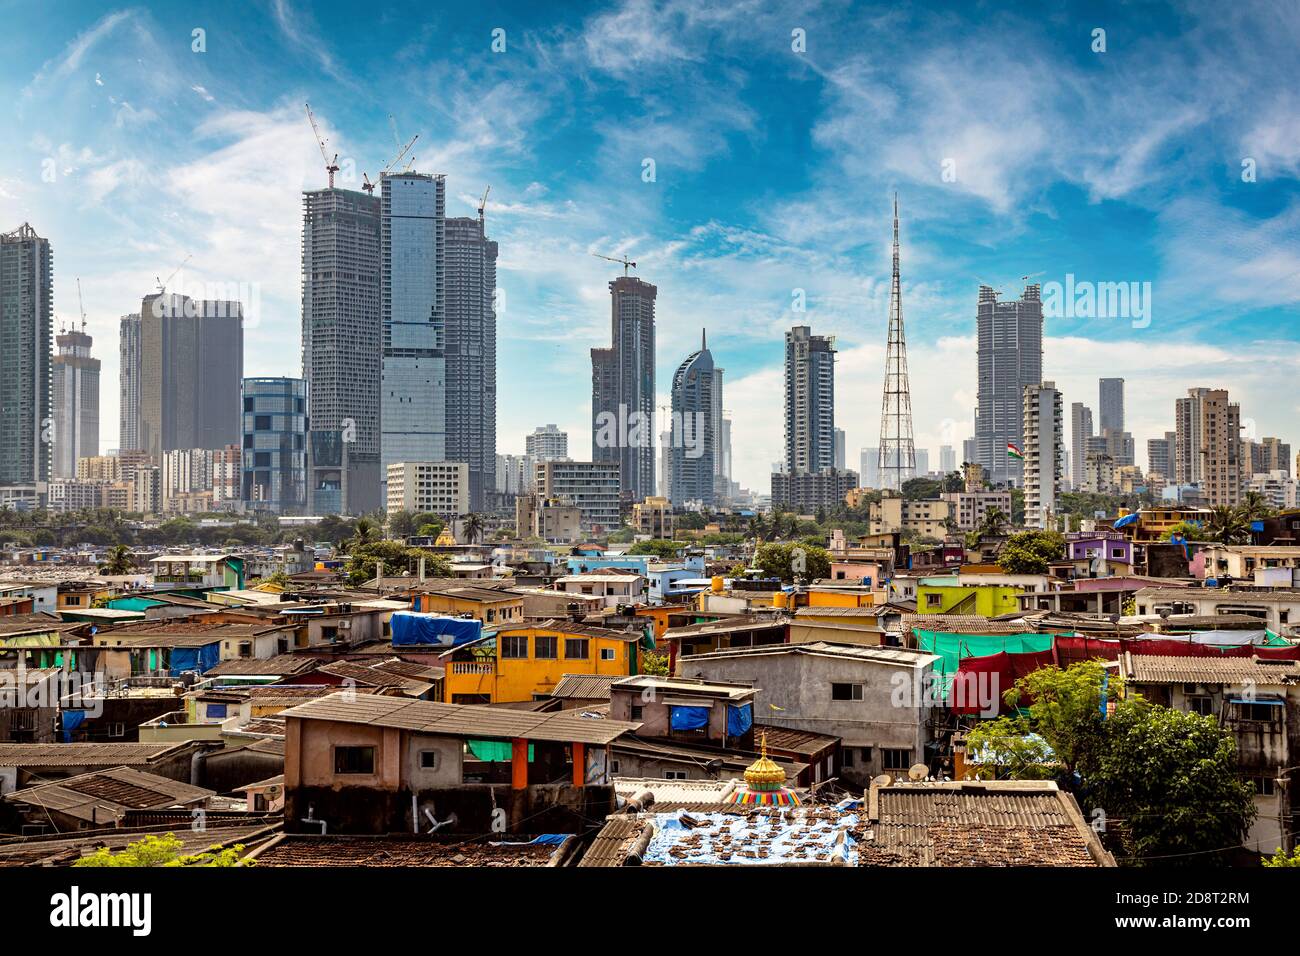 Vistas de los barrios de tugurios en las orillas de mumbai, India, con el telón de fondo de rascacielos en construcción Foto de stock